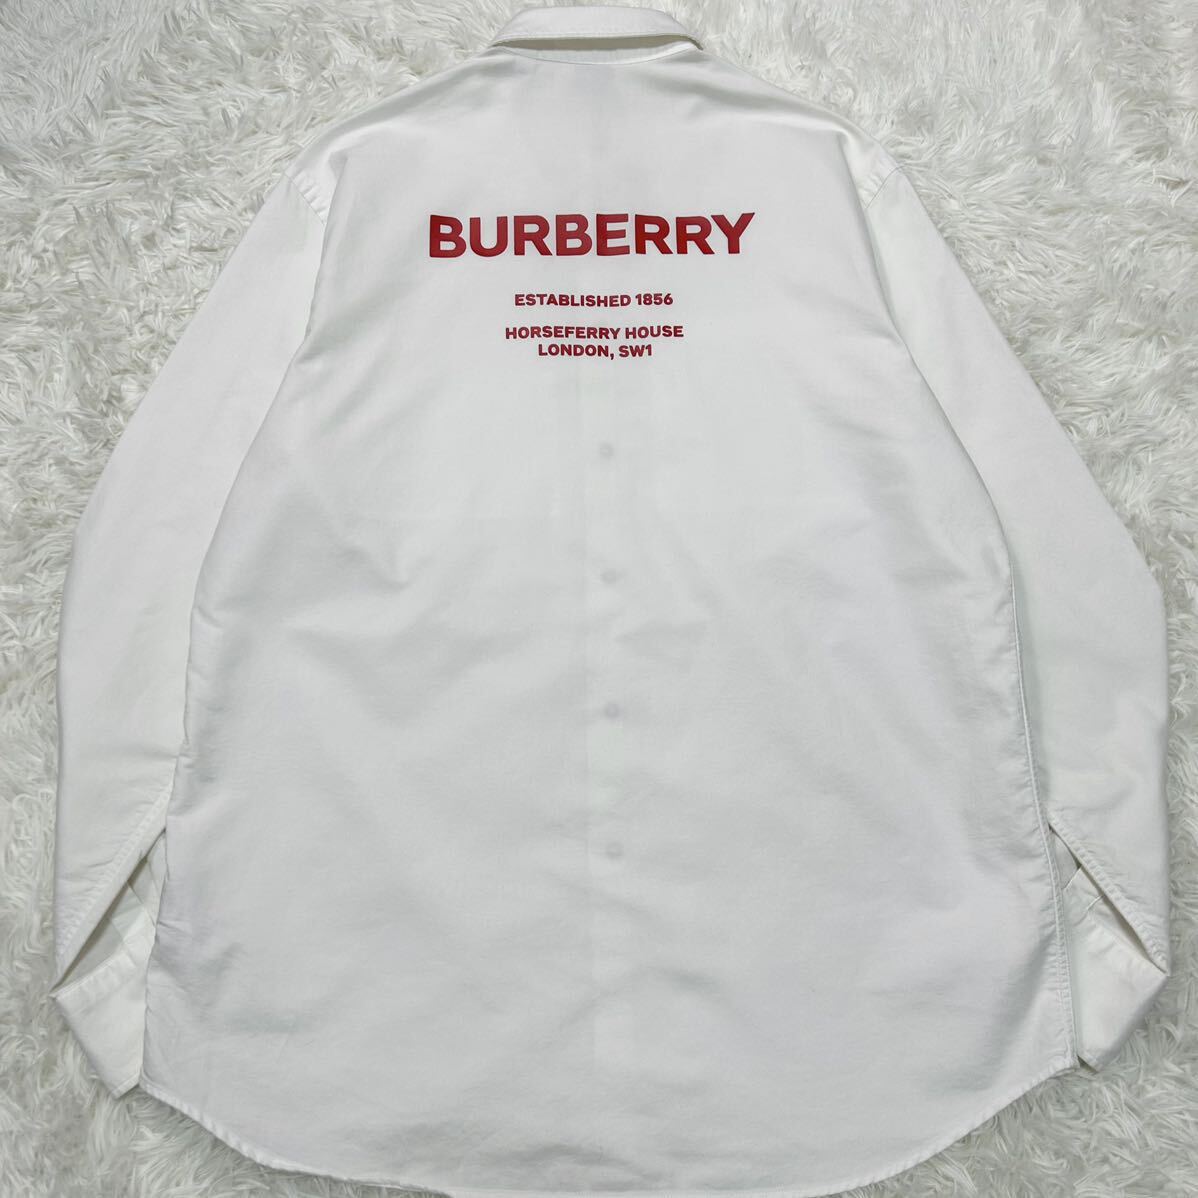  не использовался класс / современная модель *BURBERRY Burberry большой Logo рубашка с длинным рукавом платье casual белый M~L соответствует хлопок полная распродажа товар весна лето мужской 